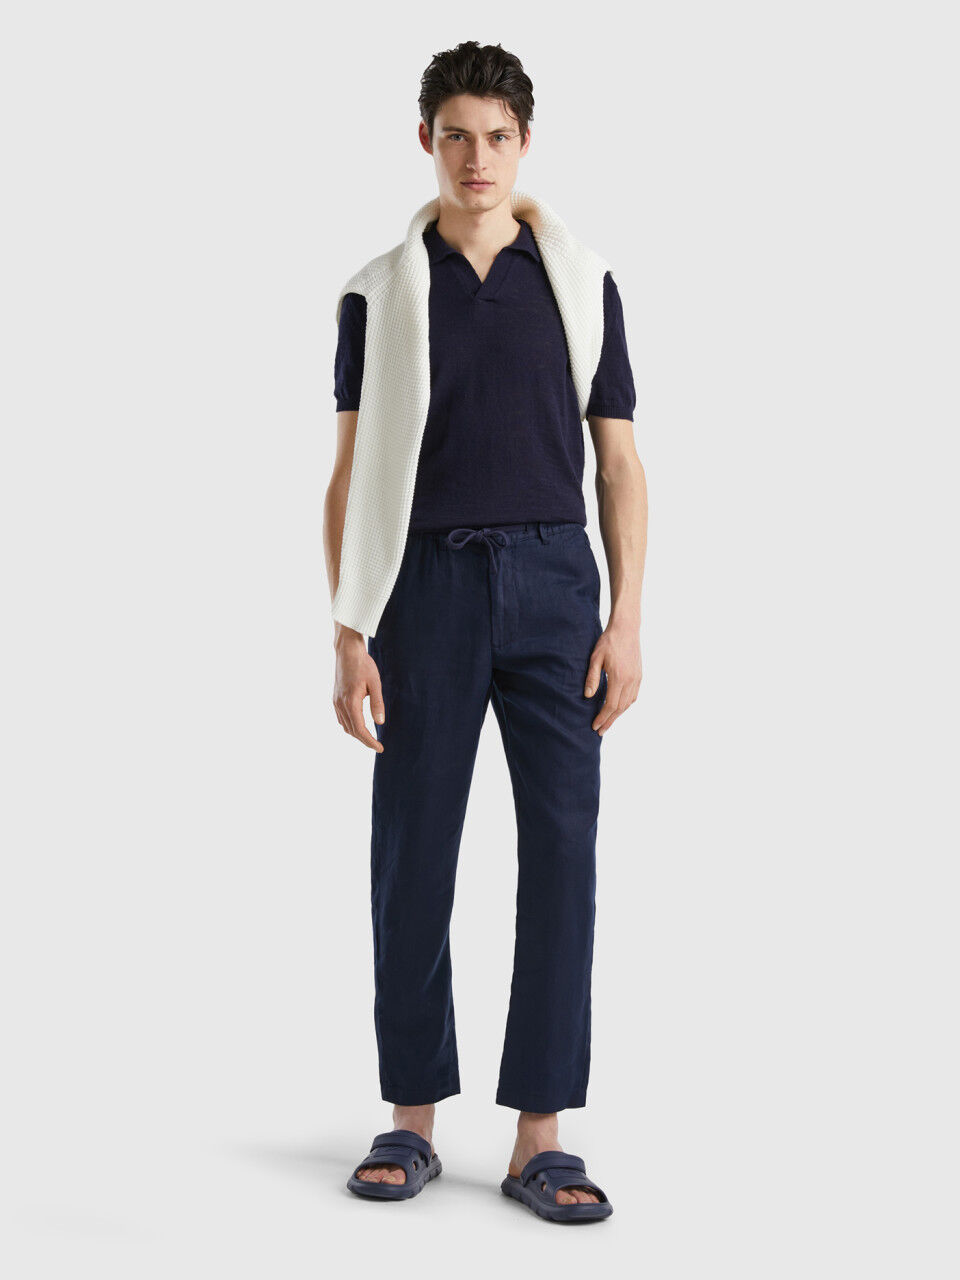 Texology Style #5913 Premium pure Linen Trousers *Ankle Fit* *Big Size* 7  Colors 40:42:44 2:2:1 = 37 Pcs Set | Instagram